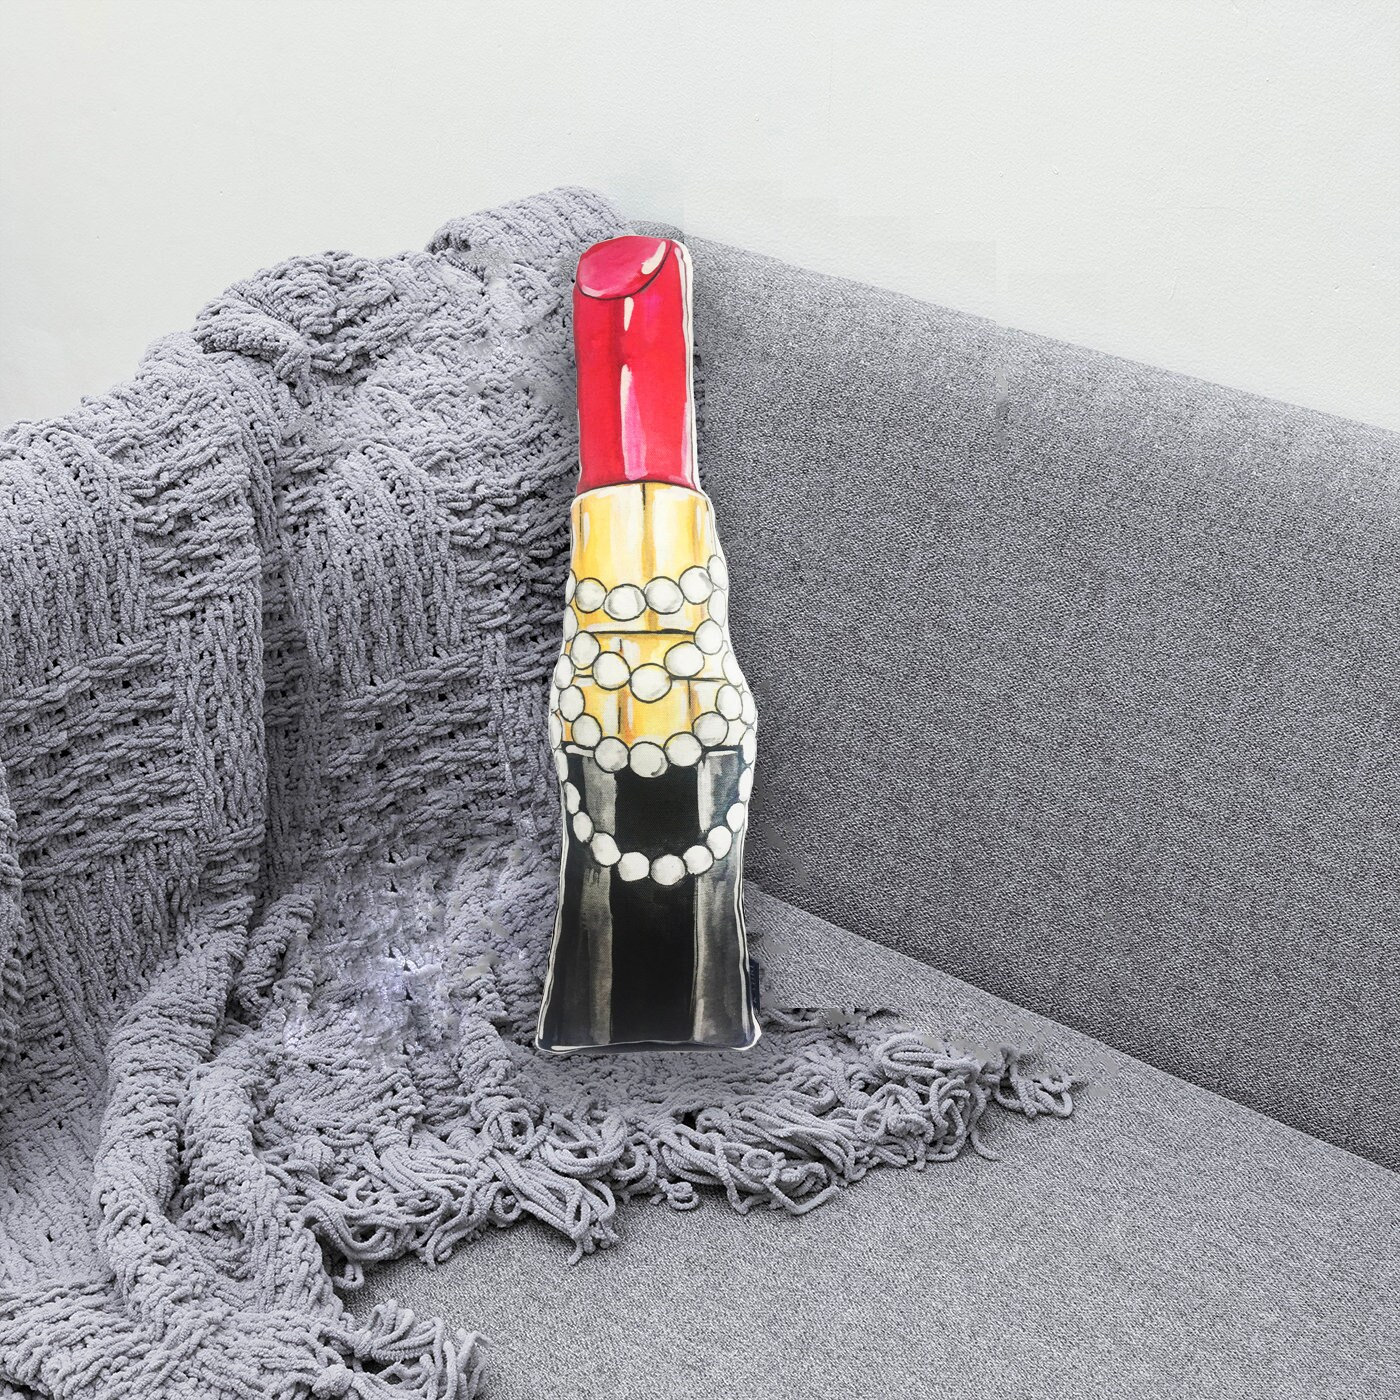 🔹FLASH SALE🔹 Louis Vuitton Lipstick Case Bag Our Price: $1200